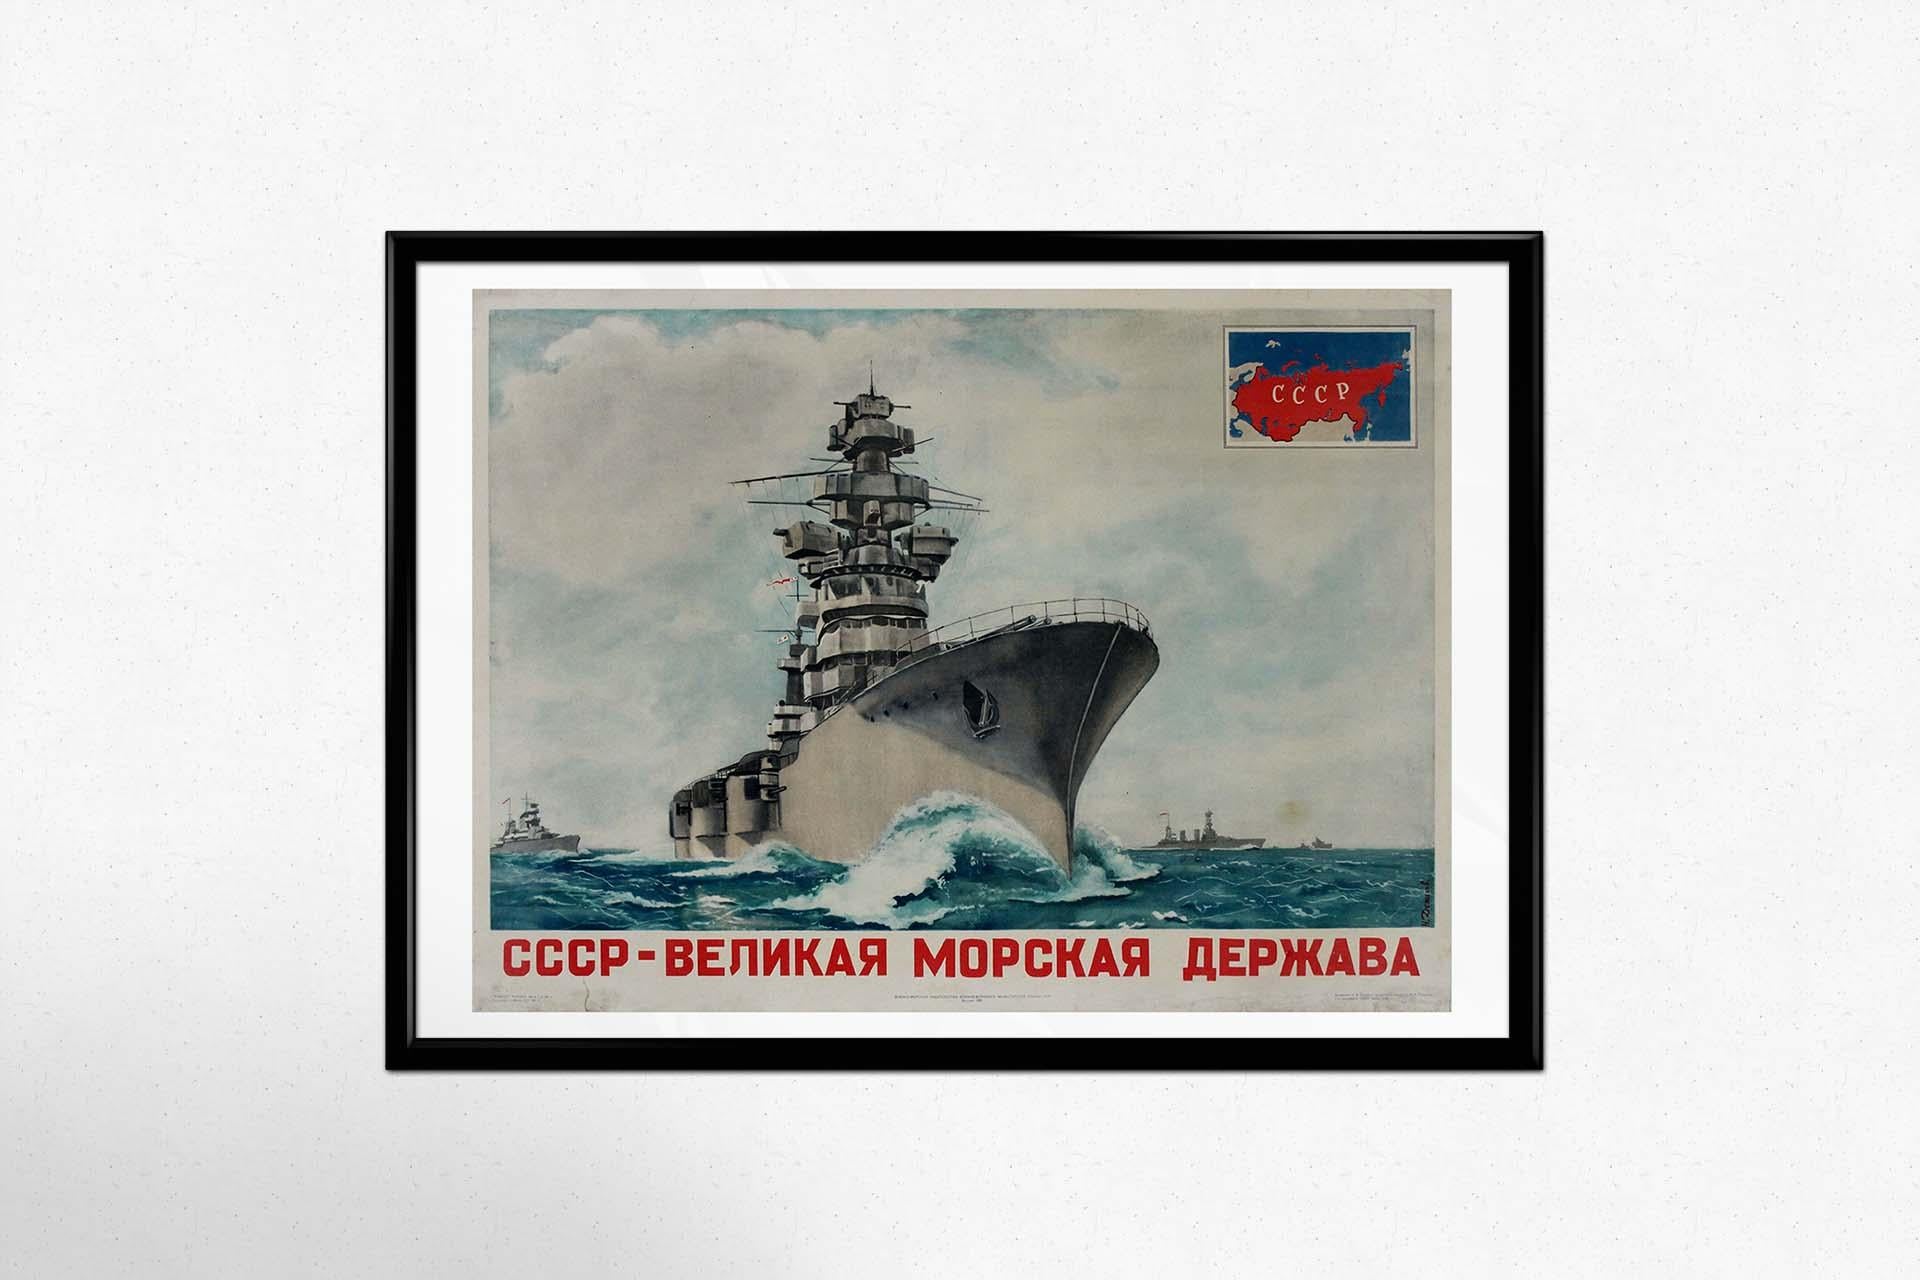 L'affiche de propagande soviétique originale créée par N. Denisov en 1951, intitulée 